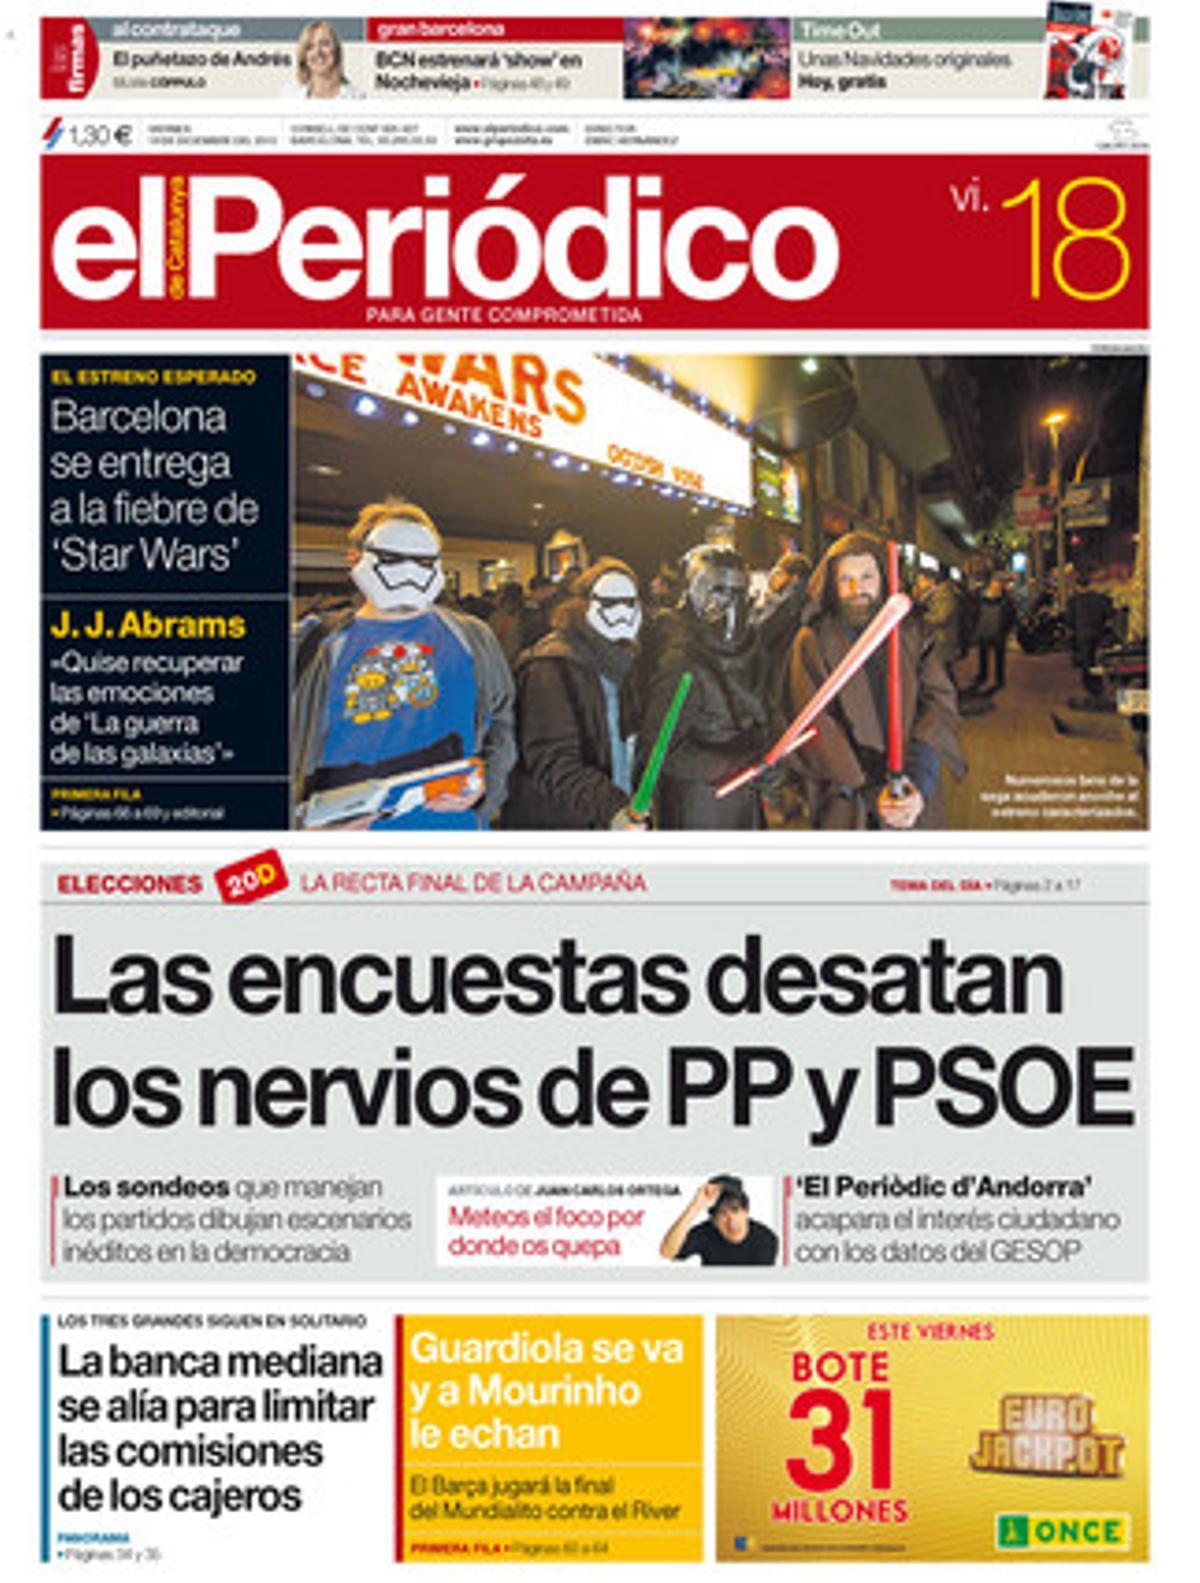 Portada de la edición de EL PERIÓDICO DE CATALUNYA del 18 de diciembre.